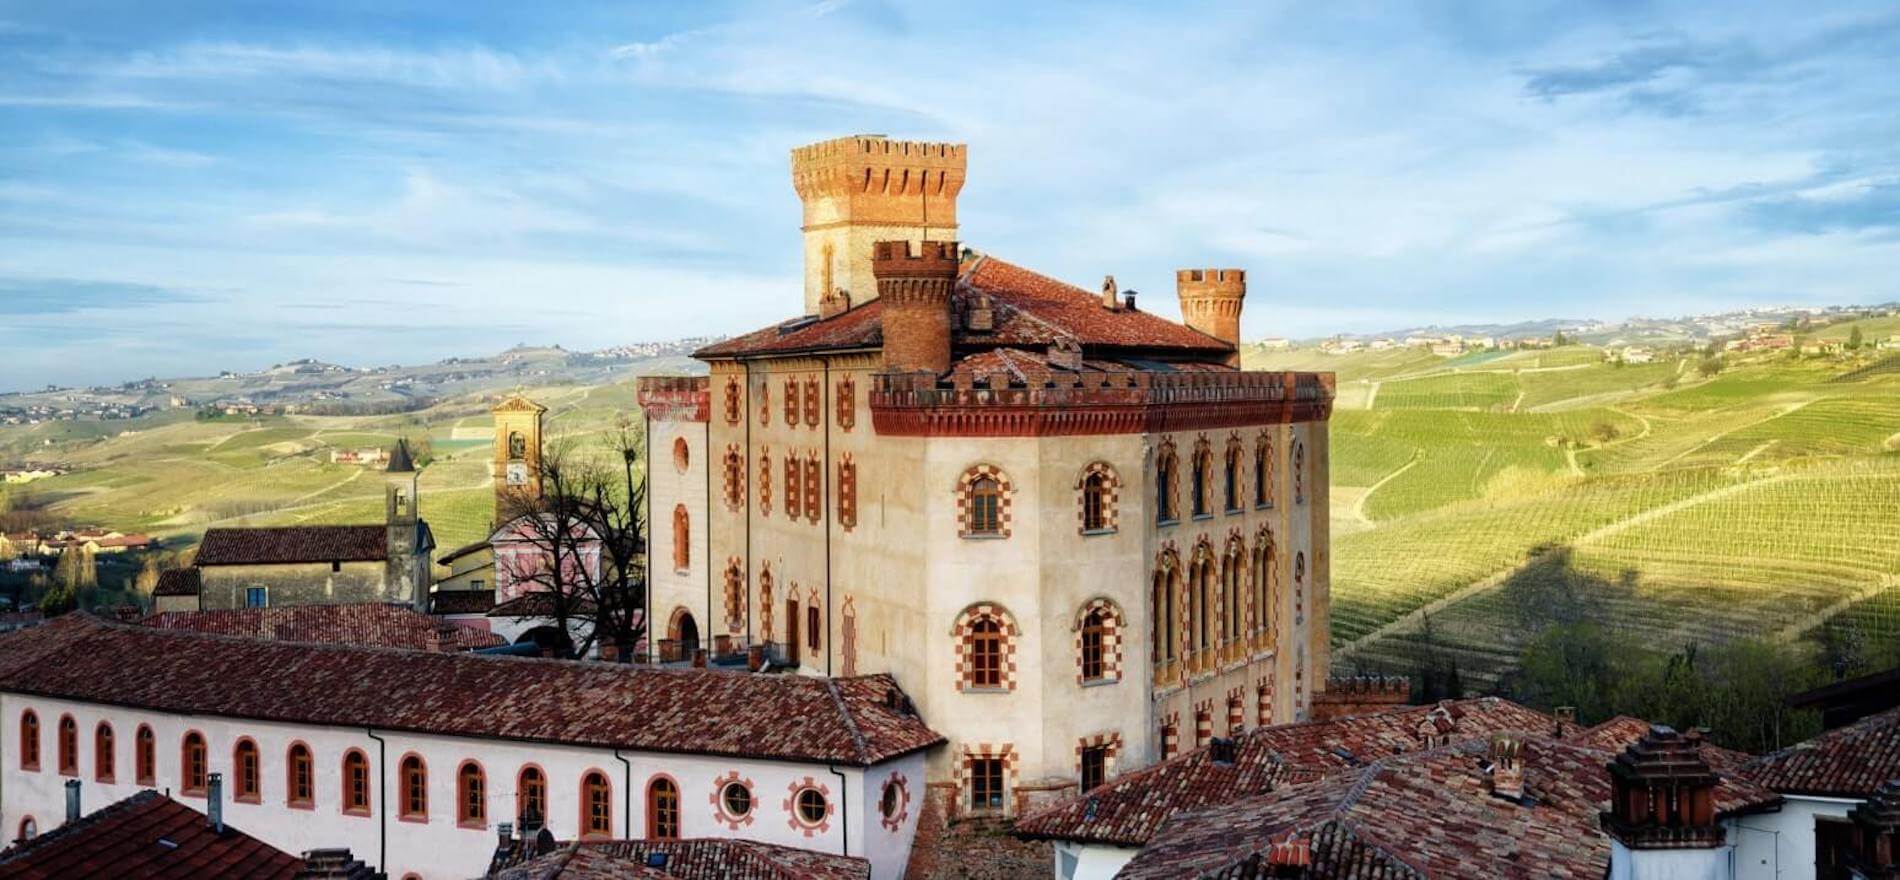 Barolo Castle view